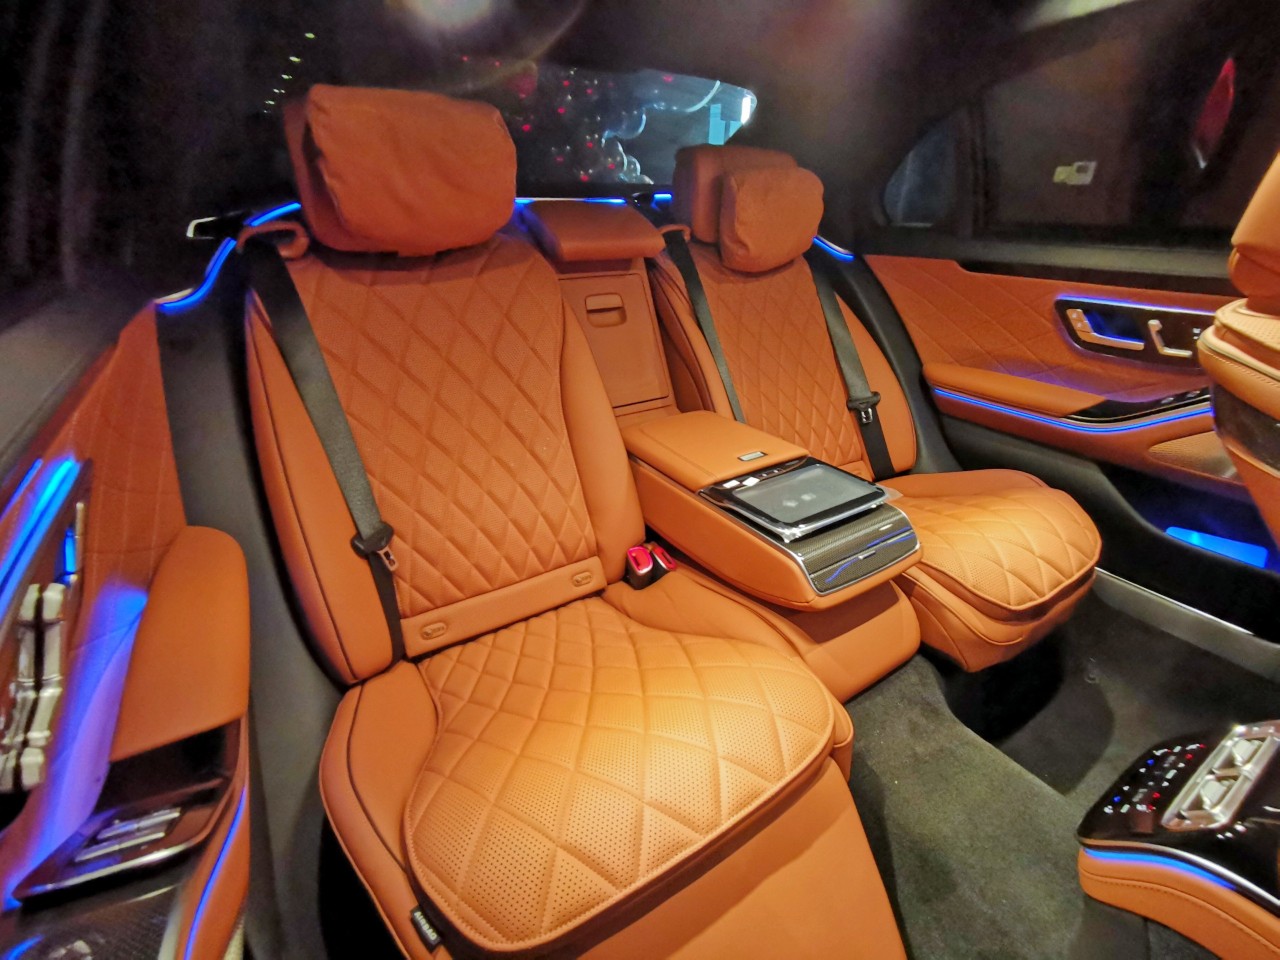 Nguyễn Quốc Cường và Đàm Thu Trang bổ sung Mercedes-Benz S450 Luxury vào bộ sưu tập